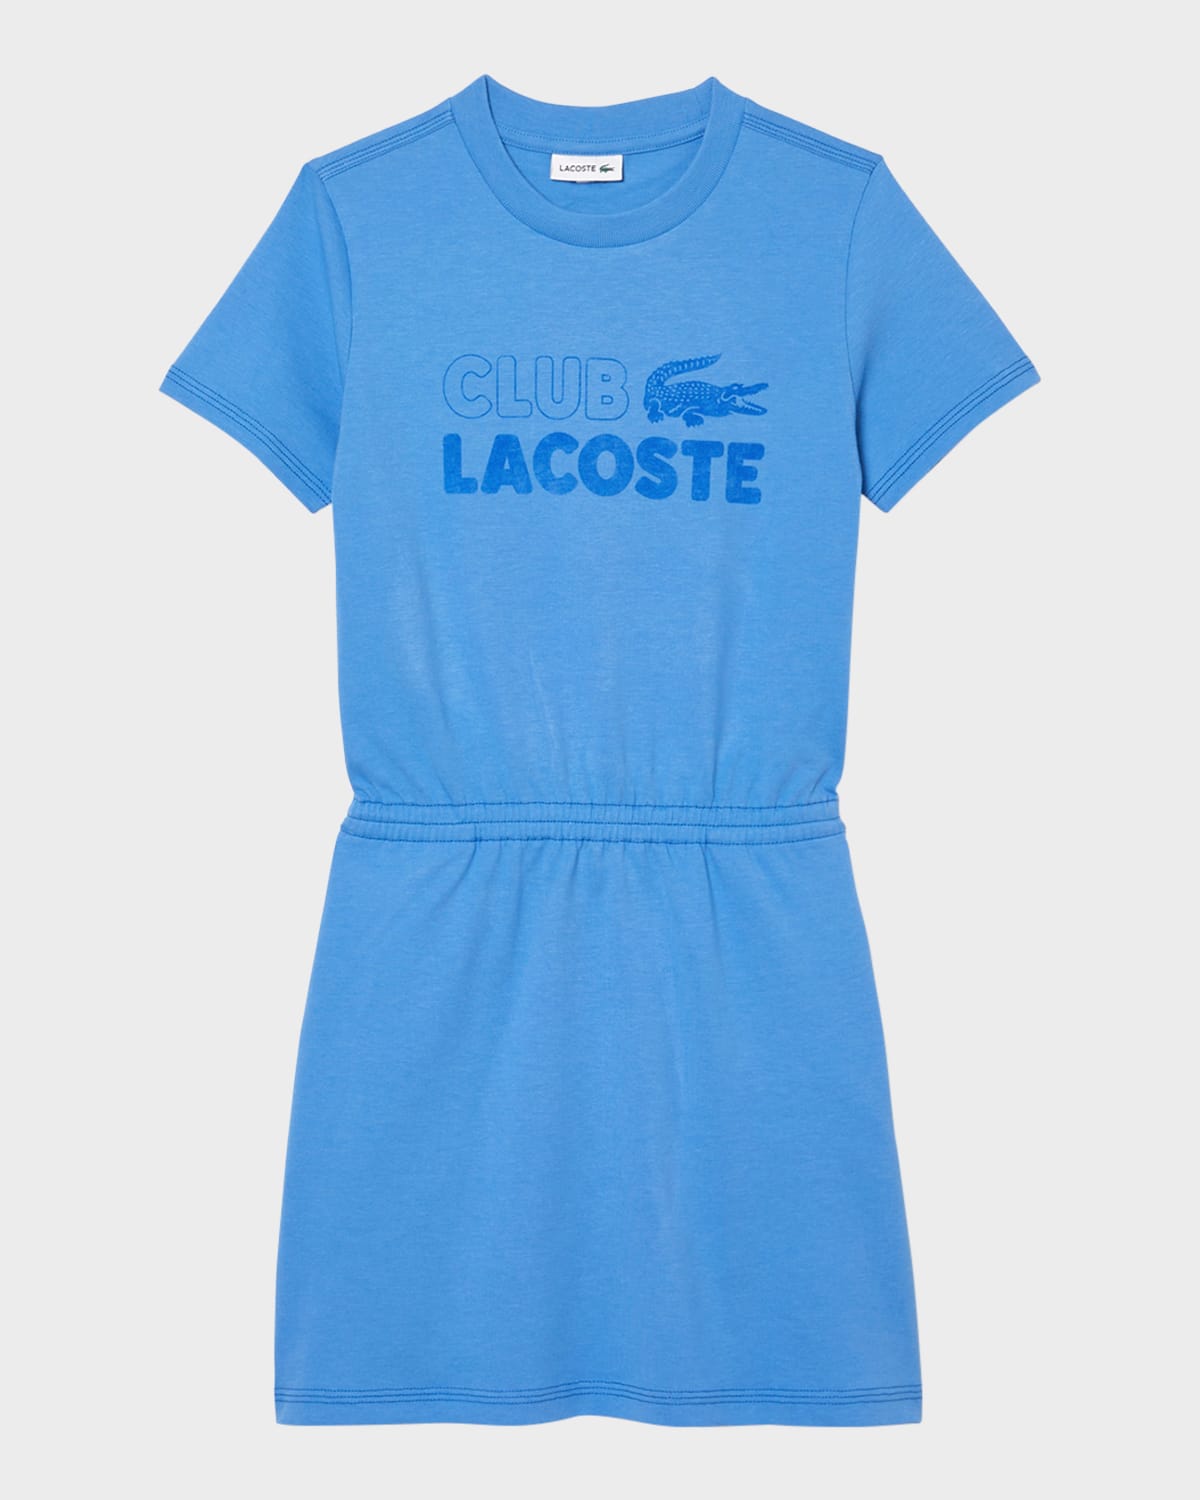 Lacoste Kids' Girl's Club  T-shirt Dress In Open Blue